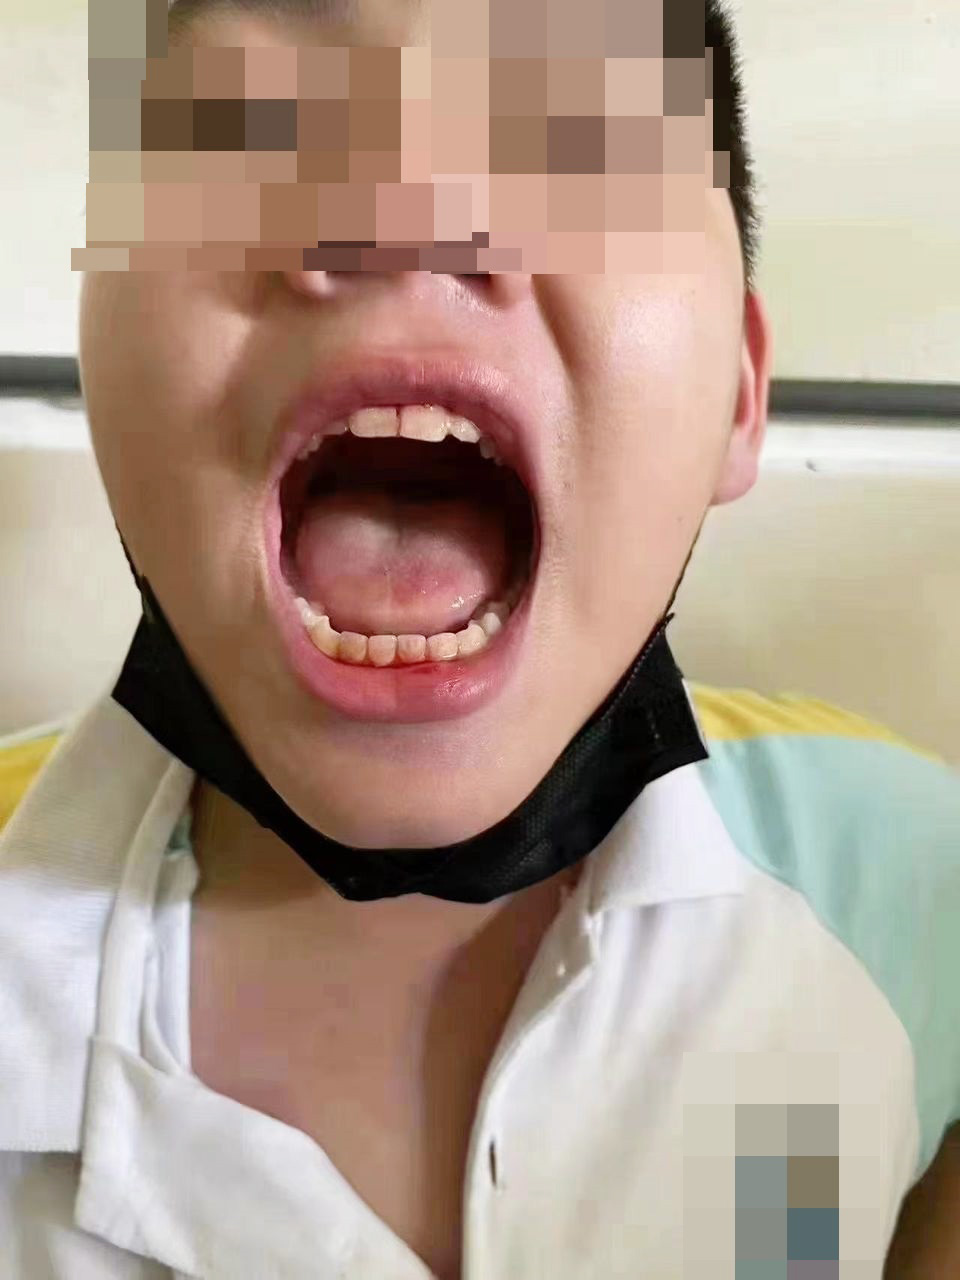 被打学生展示嘴部伤势。